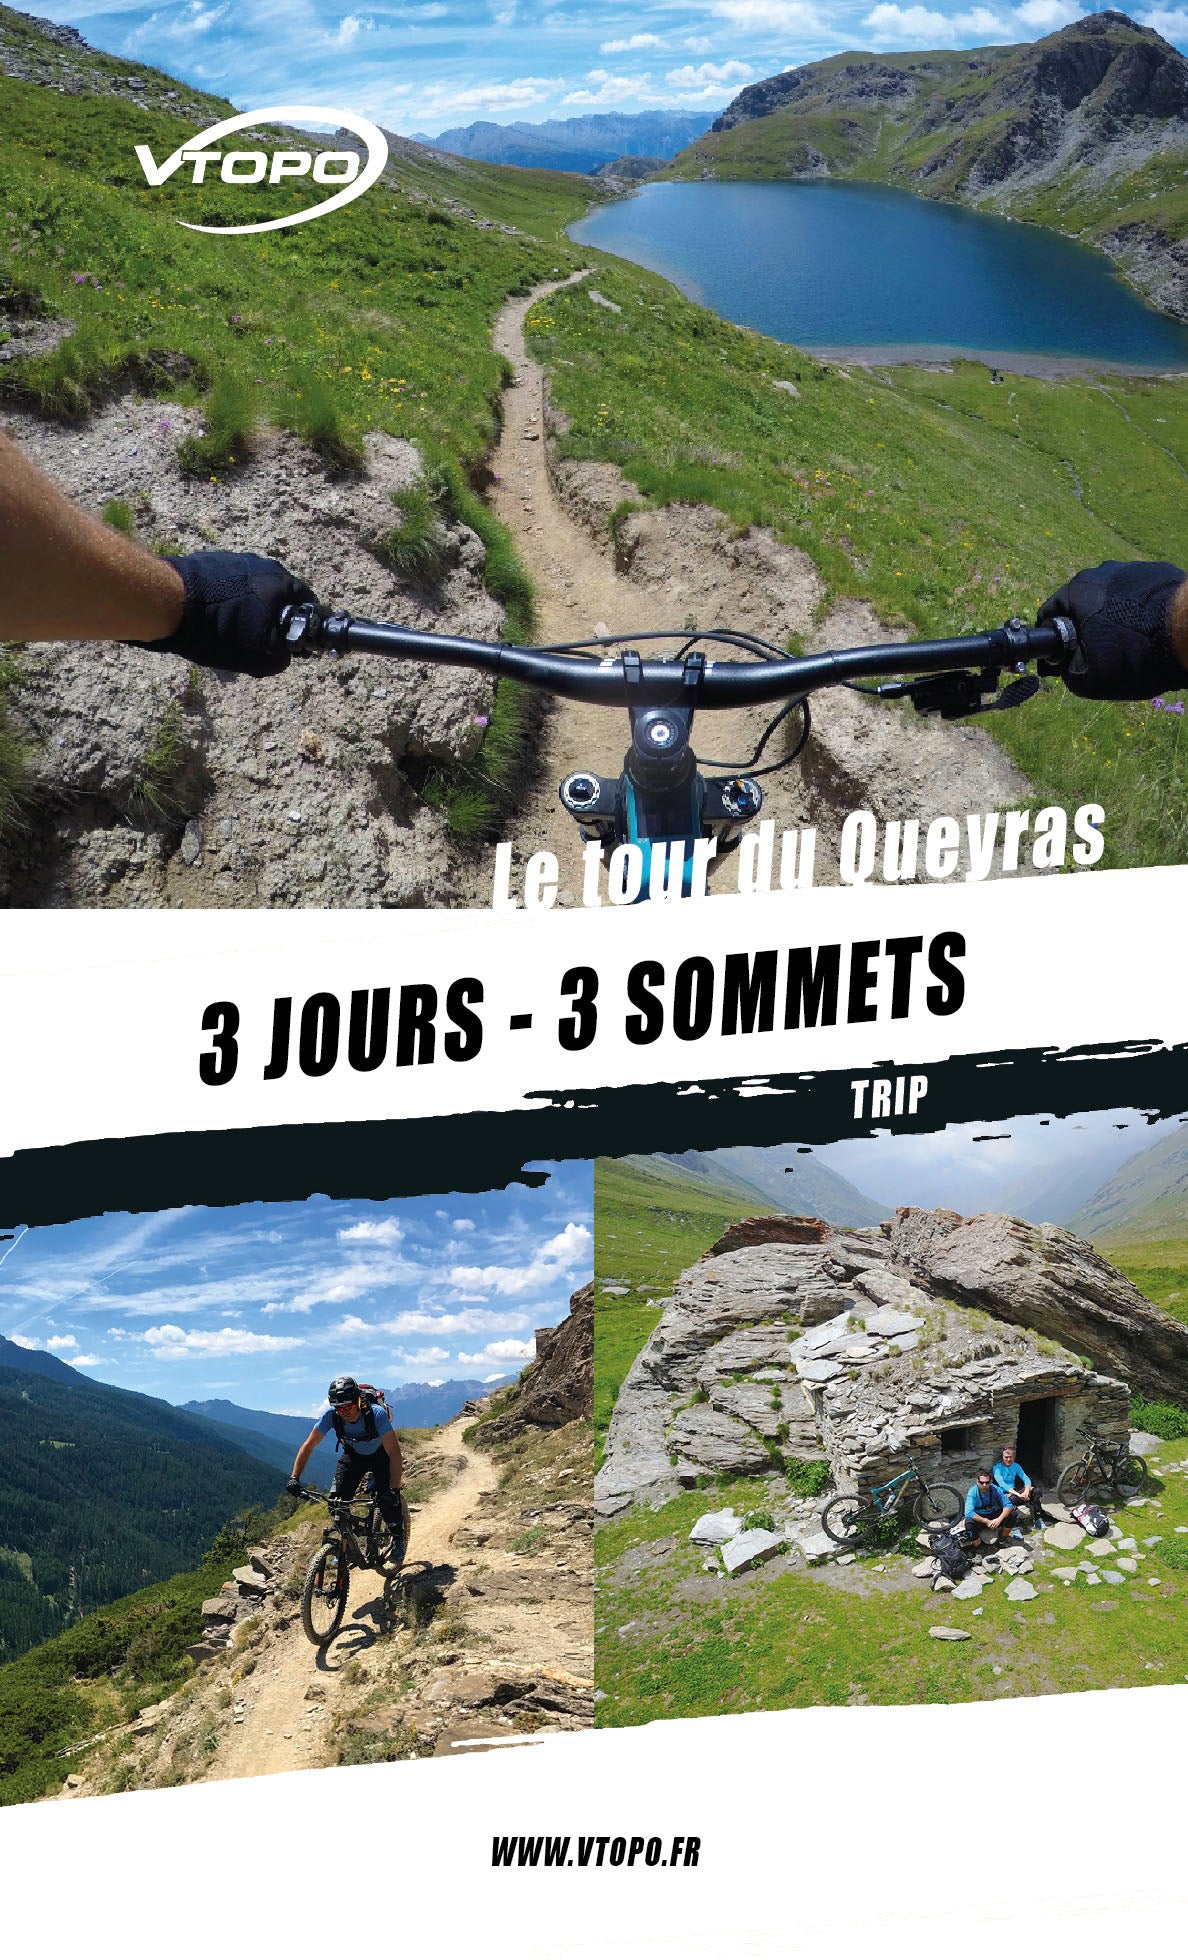 VTOPO VTT Trip Tour du Queyras - Digital book